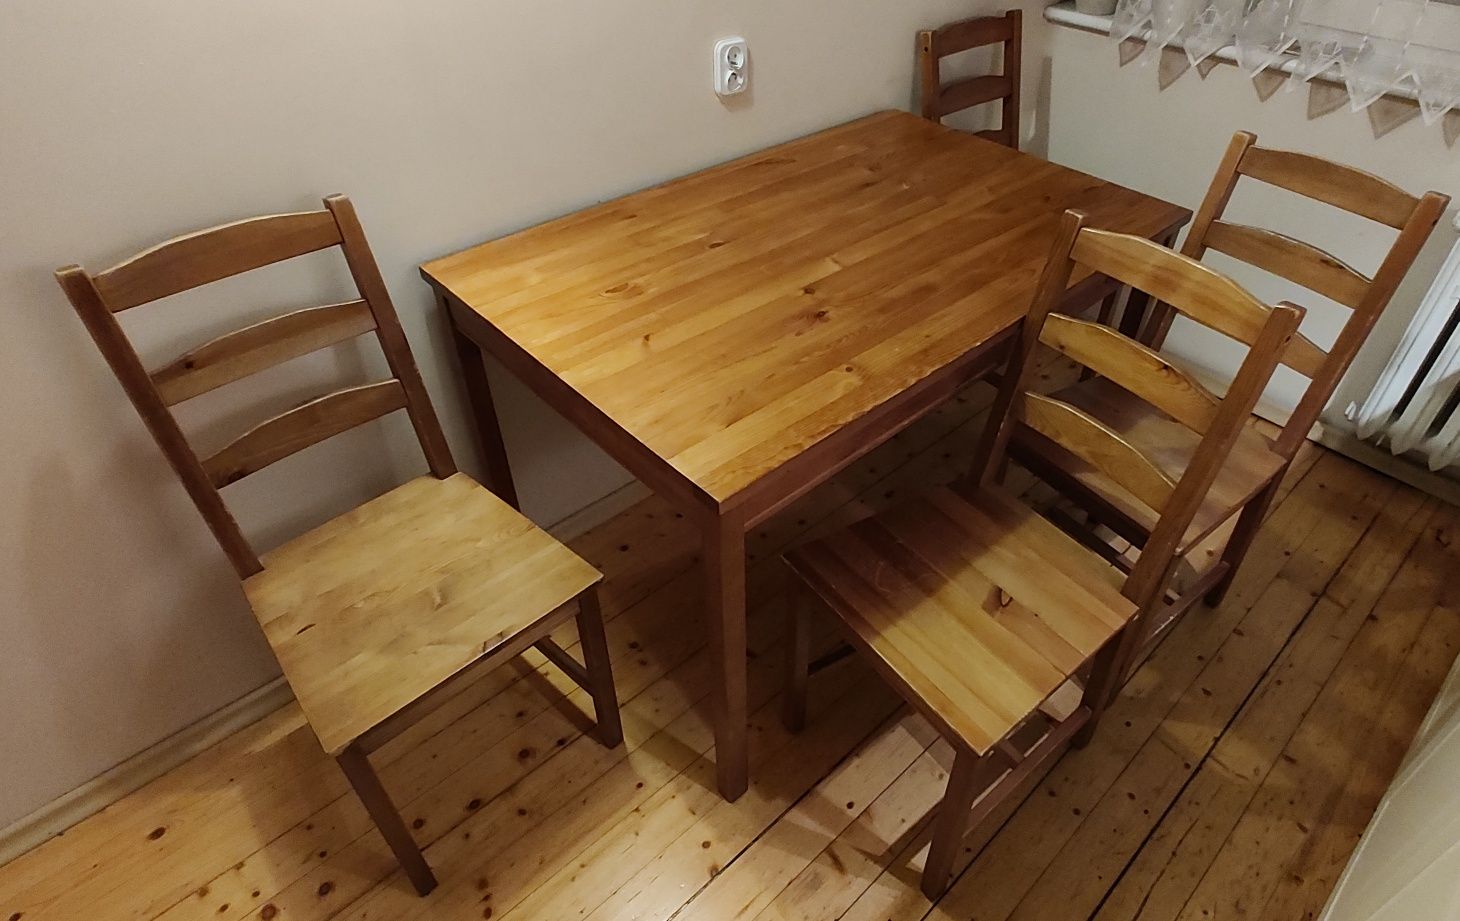 Drewniany komplet stół i 4 drewniane krzesła do salonu jadalni kuchni